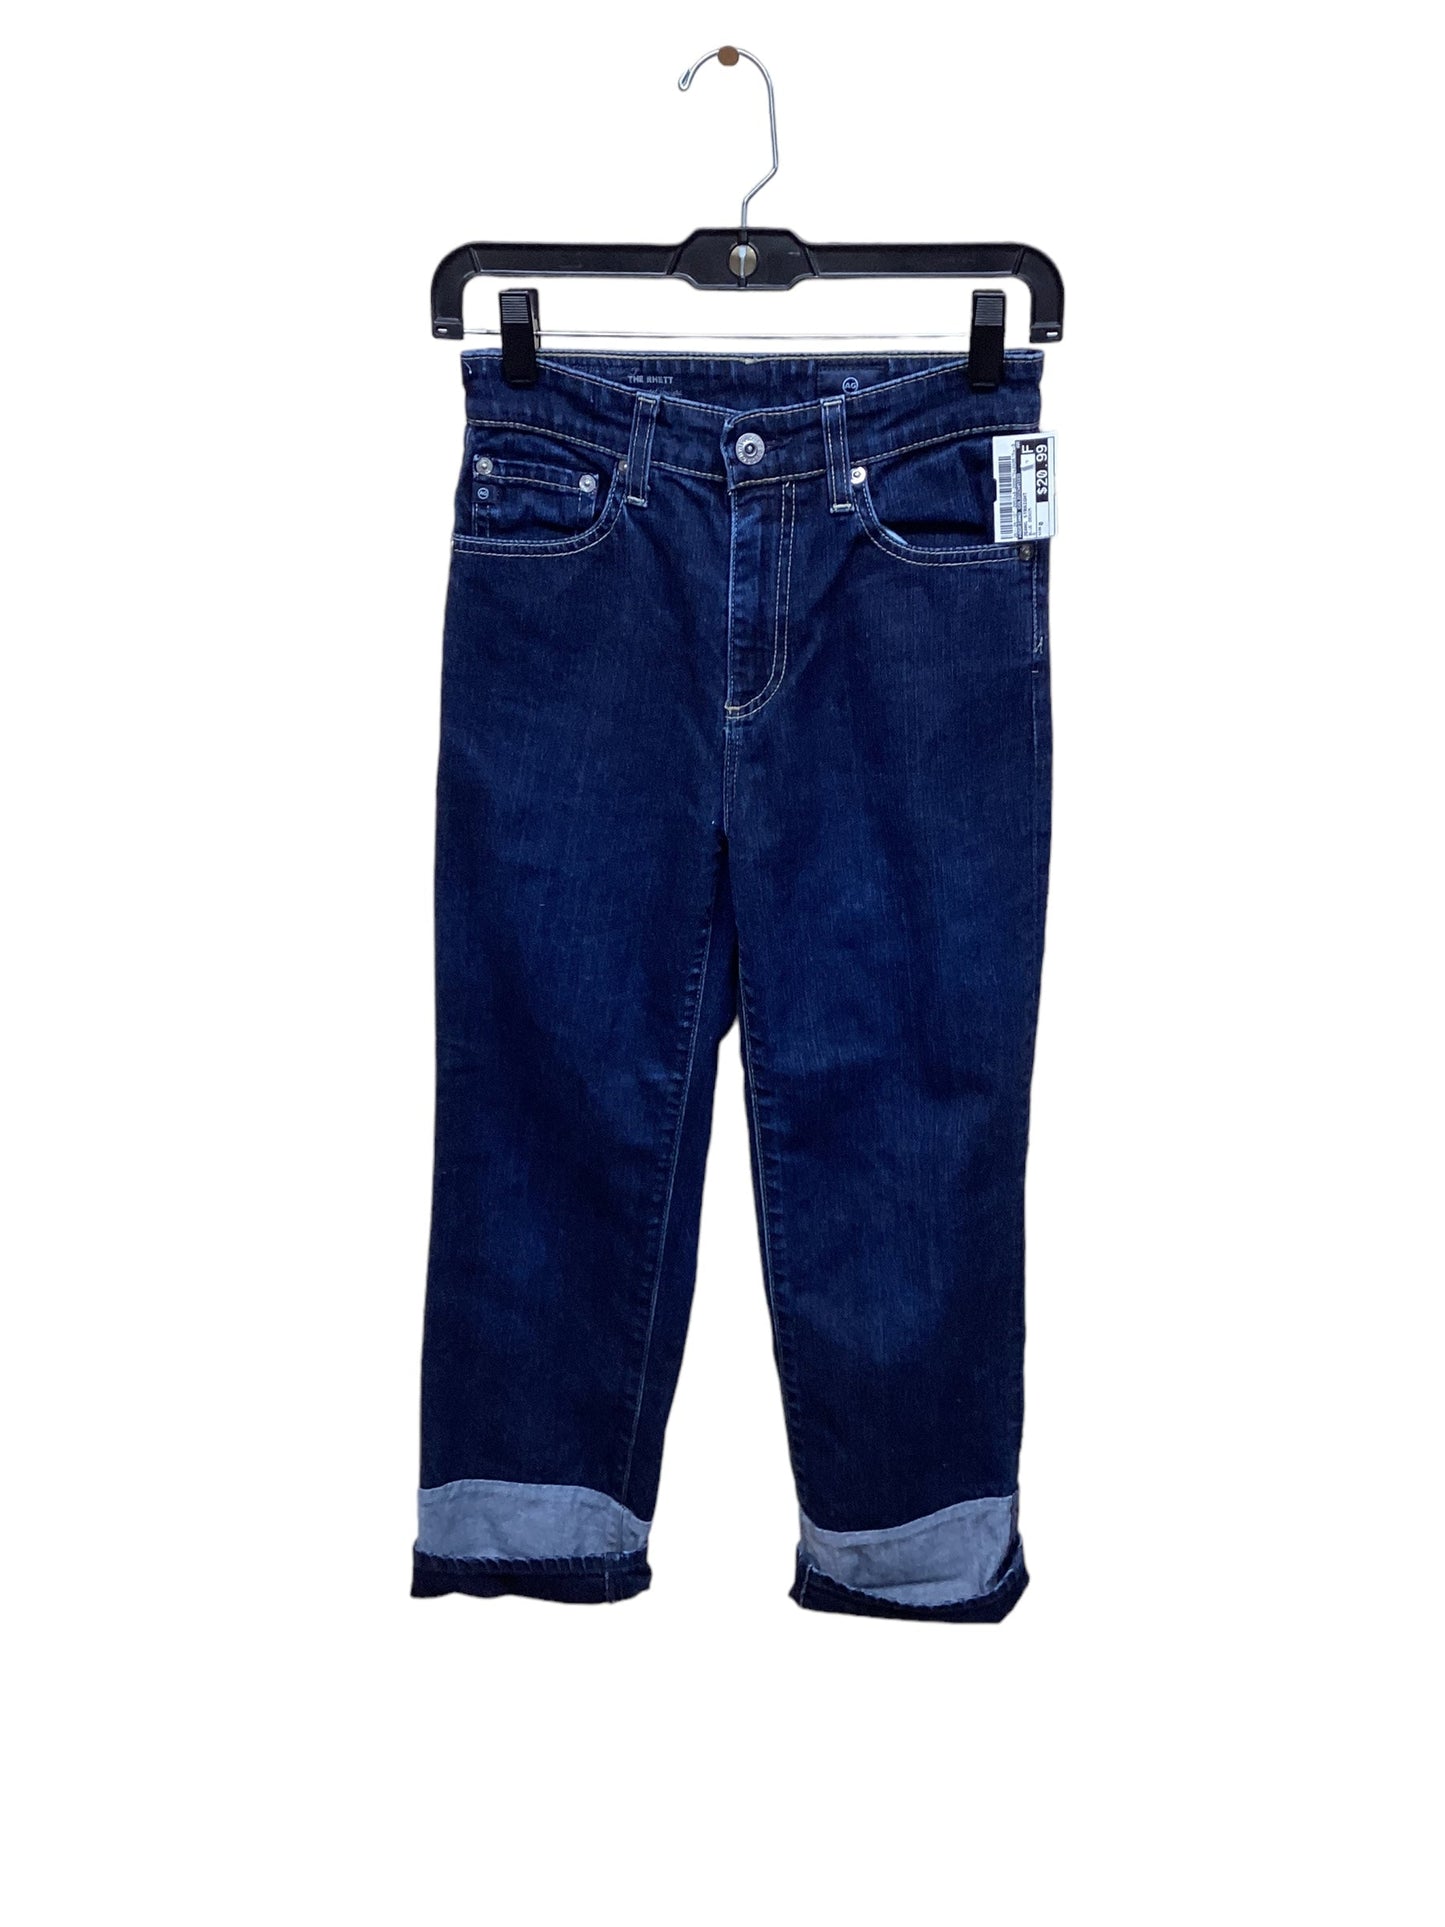 Blue Denim Jeans Straight Adriano Goldschmied, Size 0